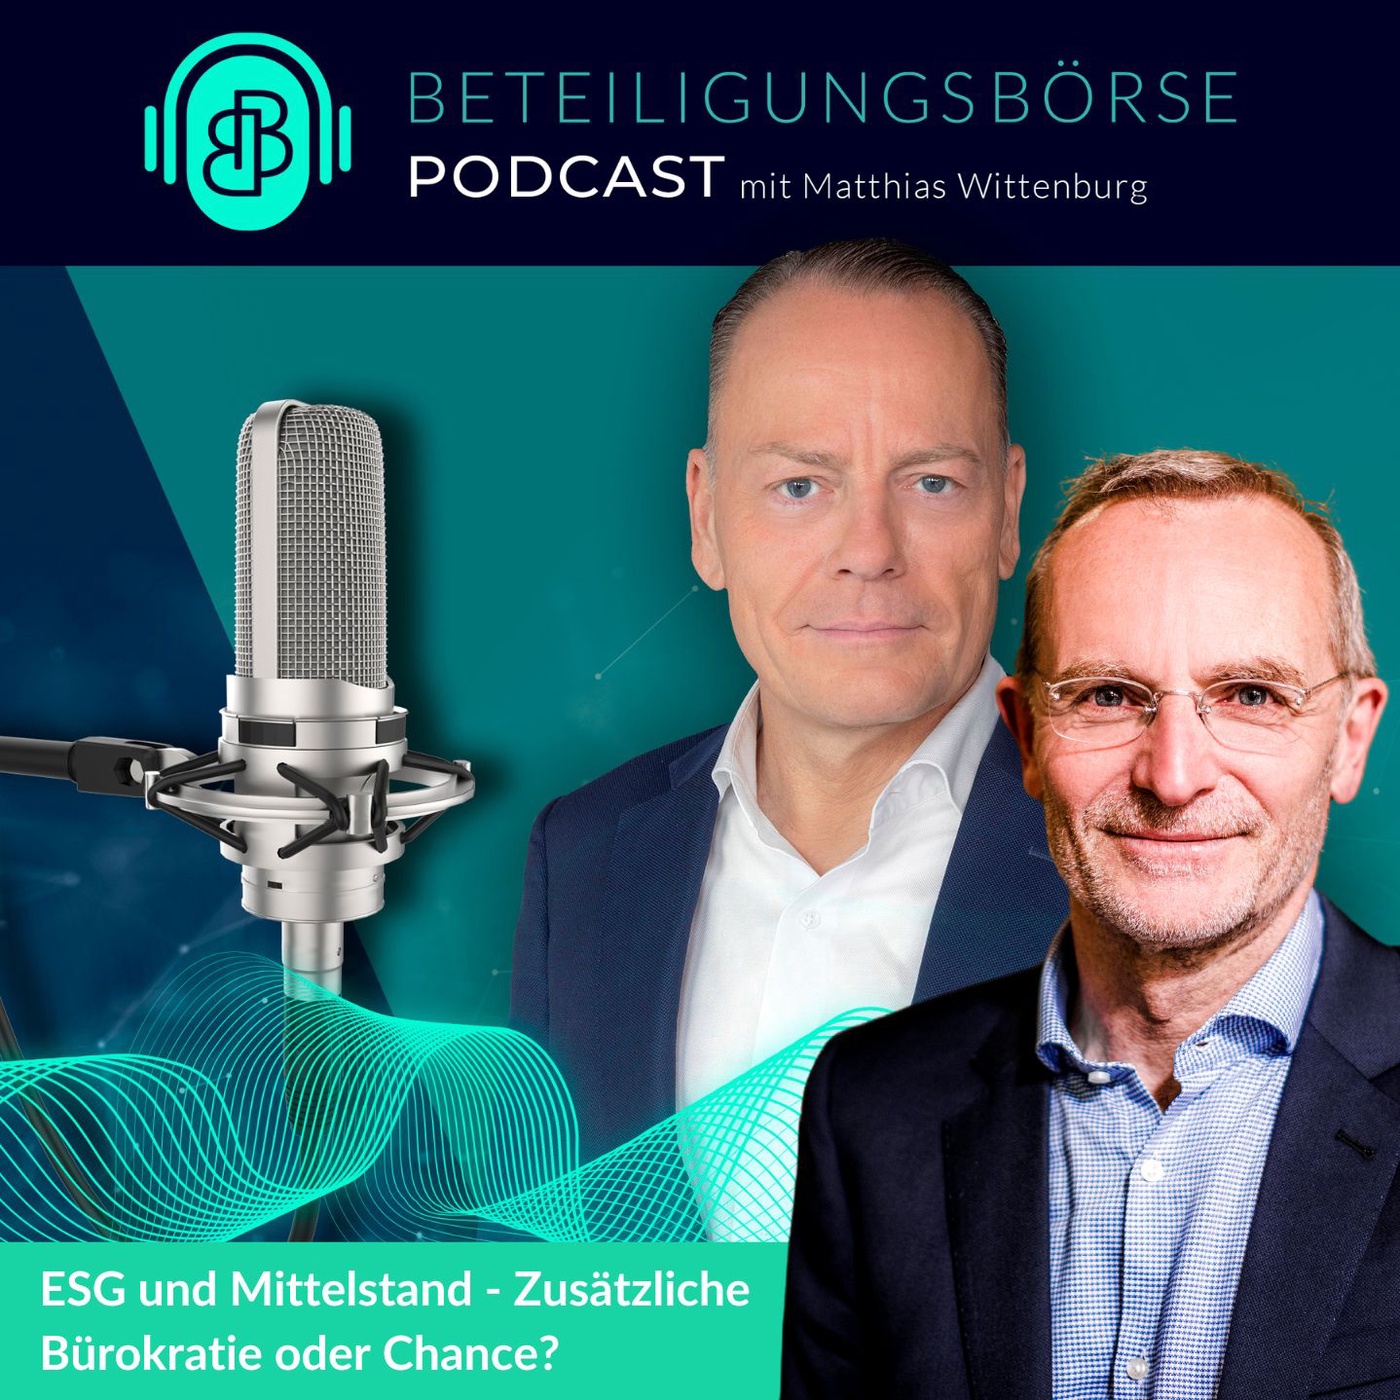 Prof. Dr. Alexander Bassen, Universität Hamburg, zu Gast im Beteiligungsbörse Deutschland Podcast